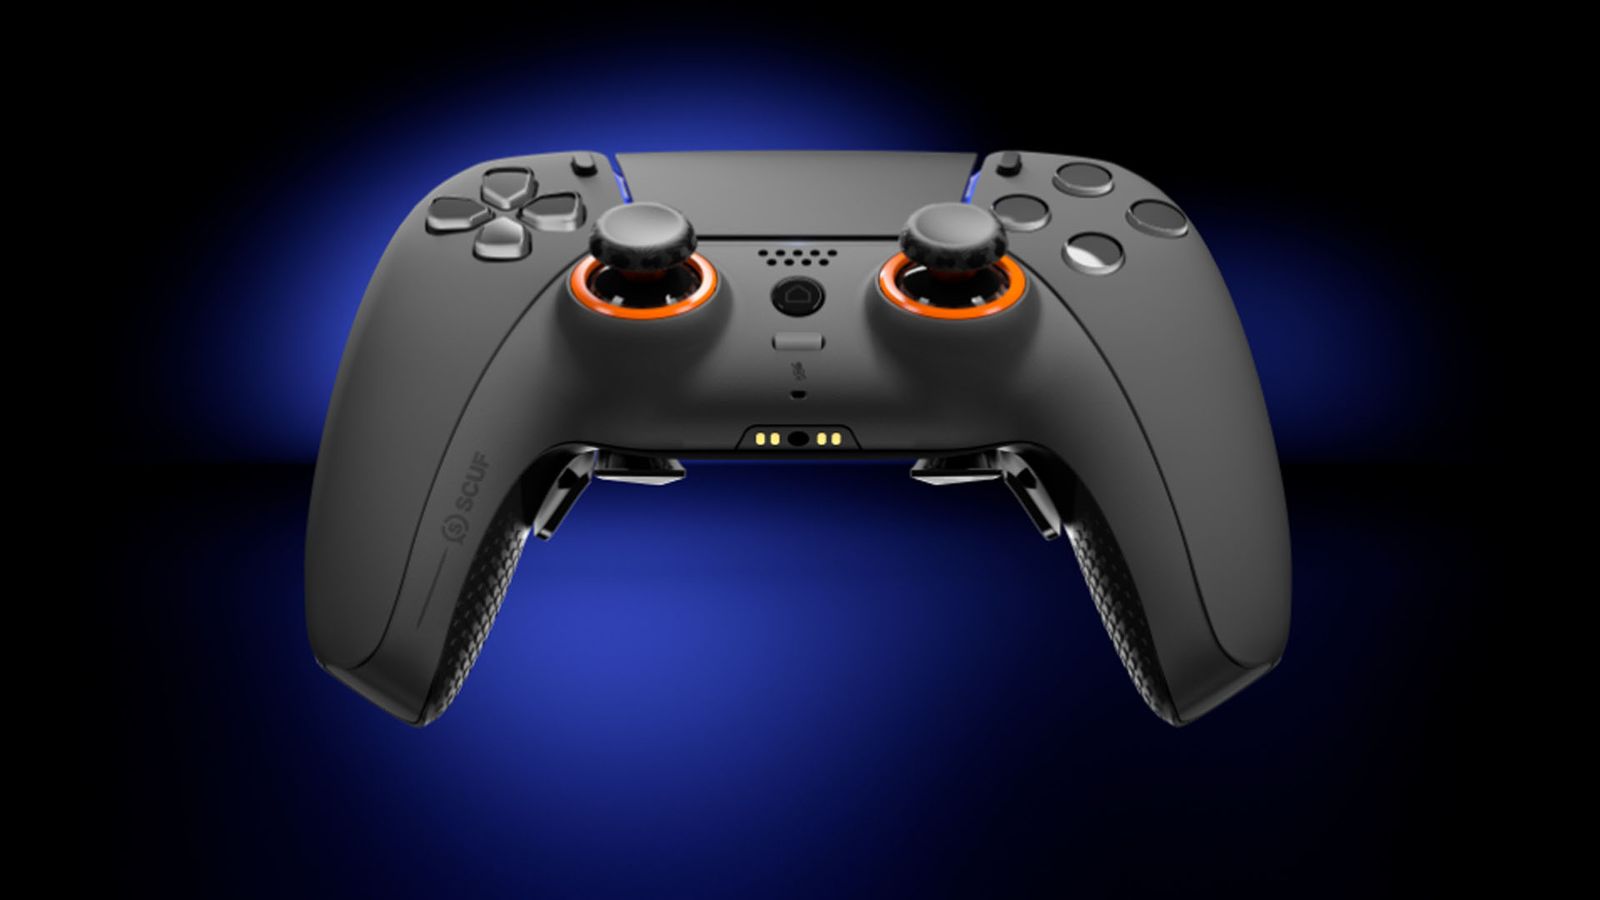 SCUF Reflex controller on dark blue and black background